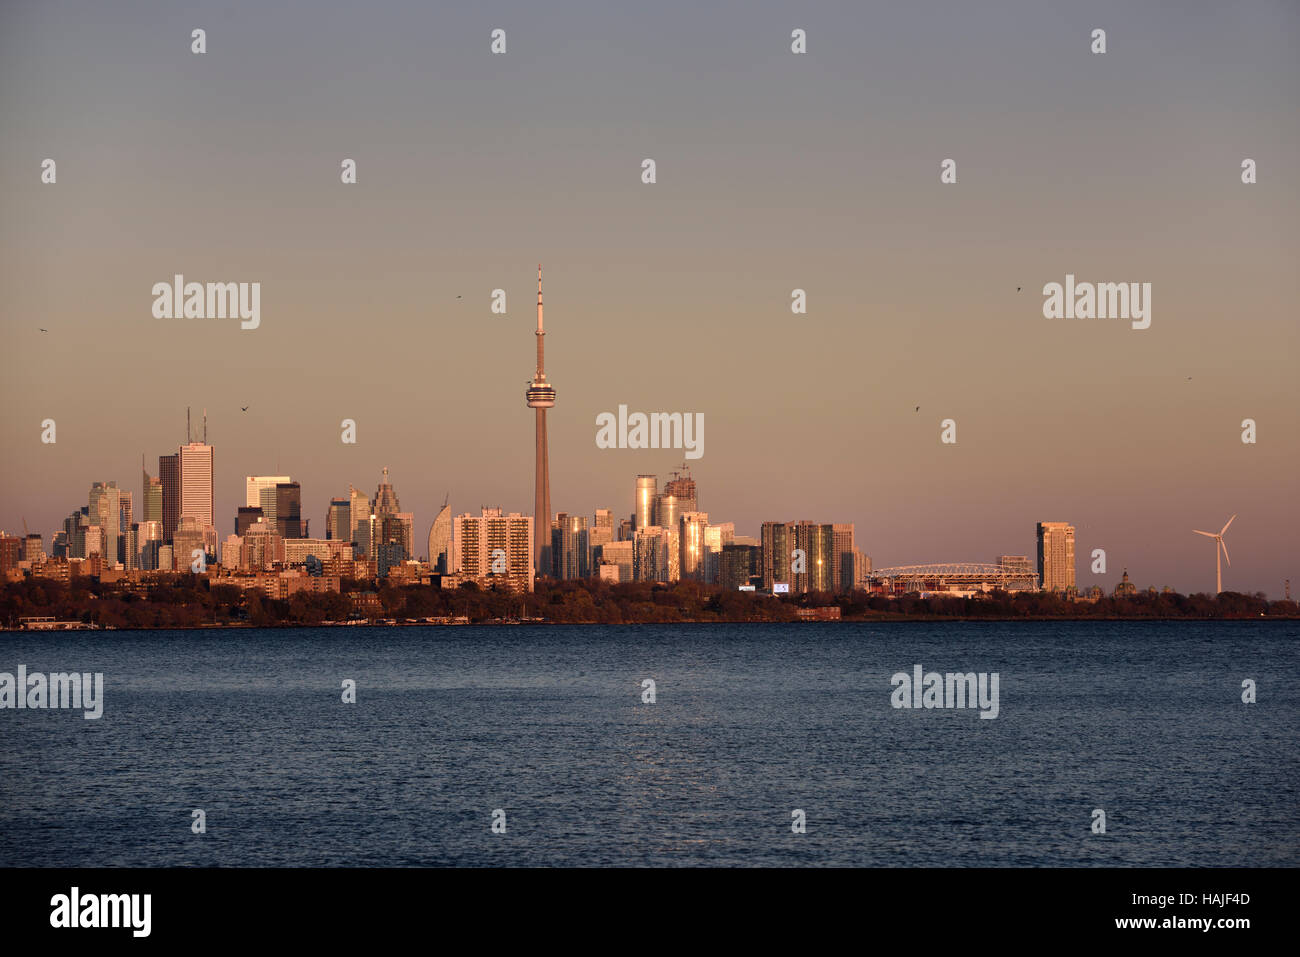 Lumière dorée sur le centre-ville de Toronto Skyline at sundown de Humber Bay Park Banque D'Images